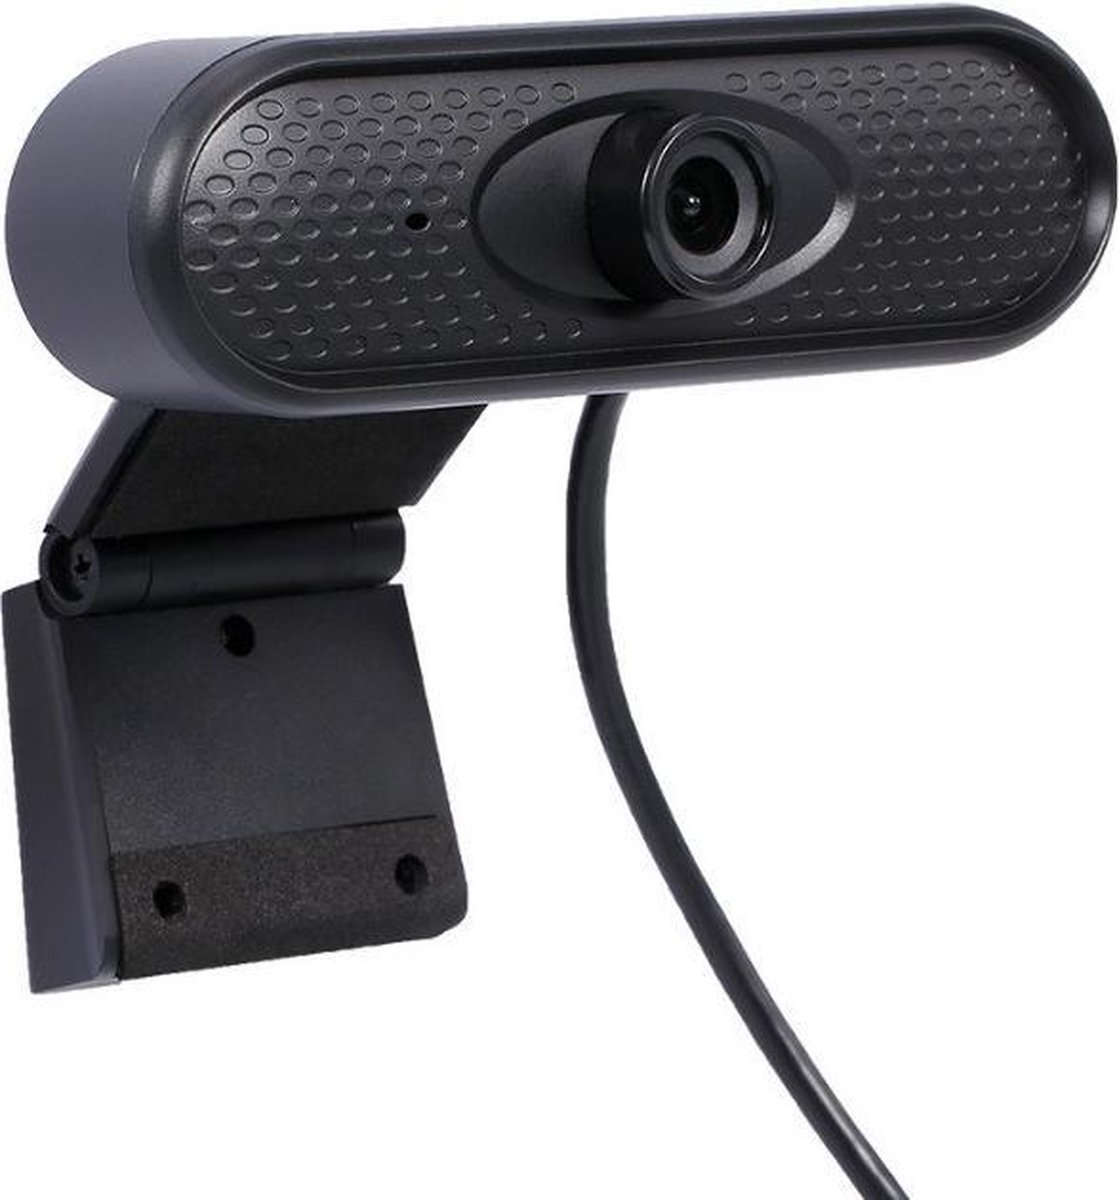 Lipa AW-20 webcam Full HD / Ook voor foto's / Met microfoon/ Universeel en compatibel voor iedere computer / Thuiswerken / Digitaal vergaderen / Telewerken / Voor familie / Met houder / Makkelijk aansluiten met usb